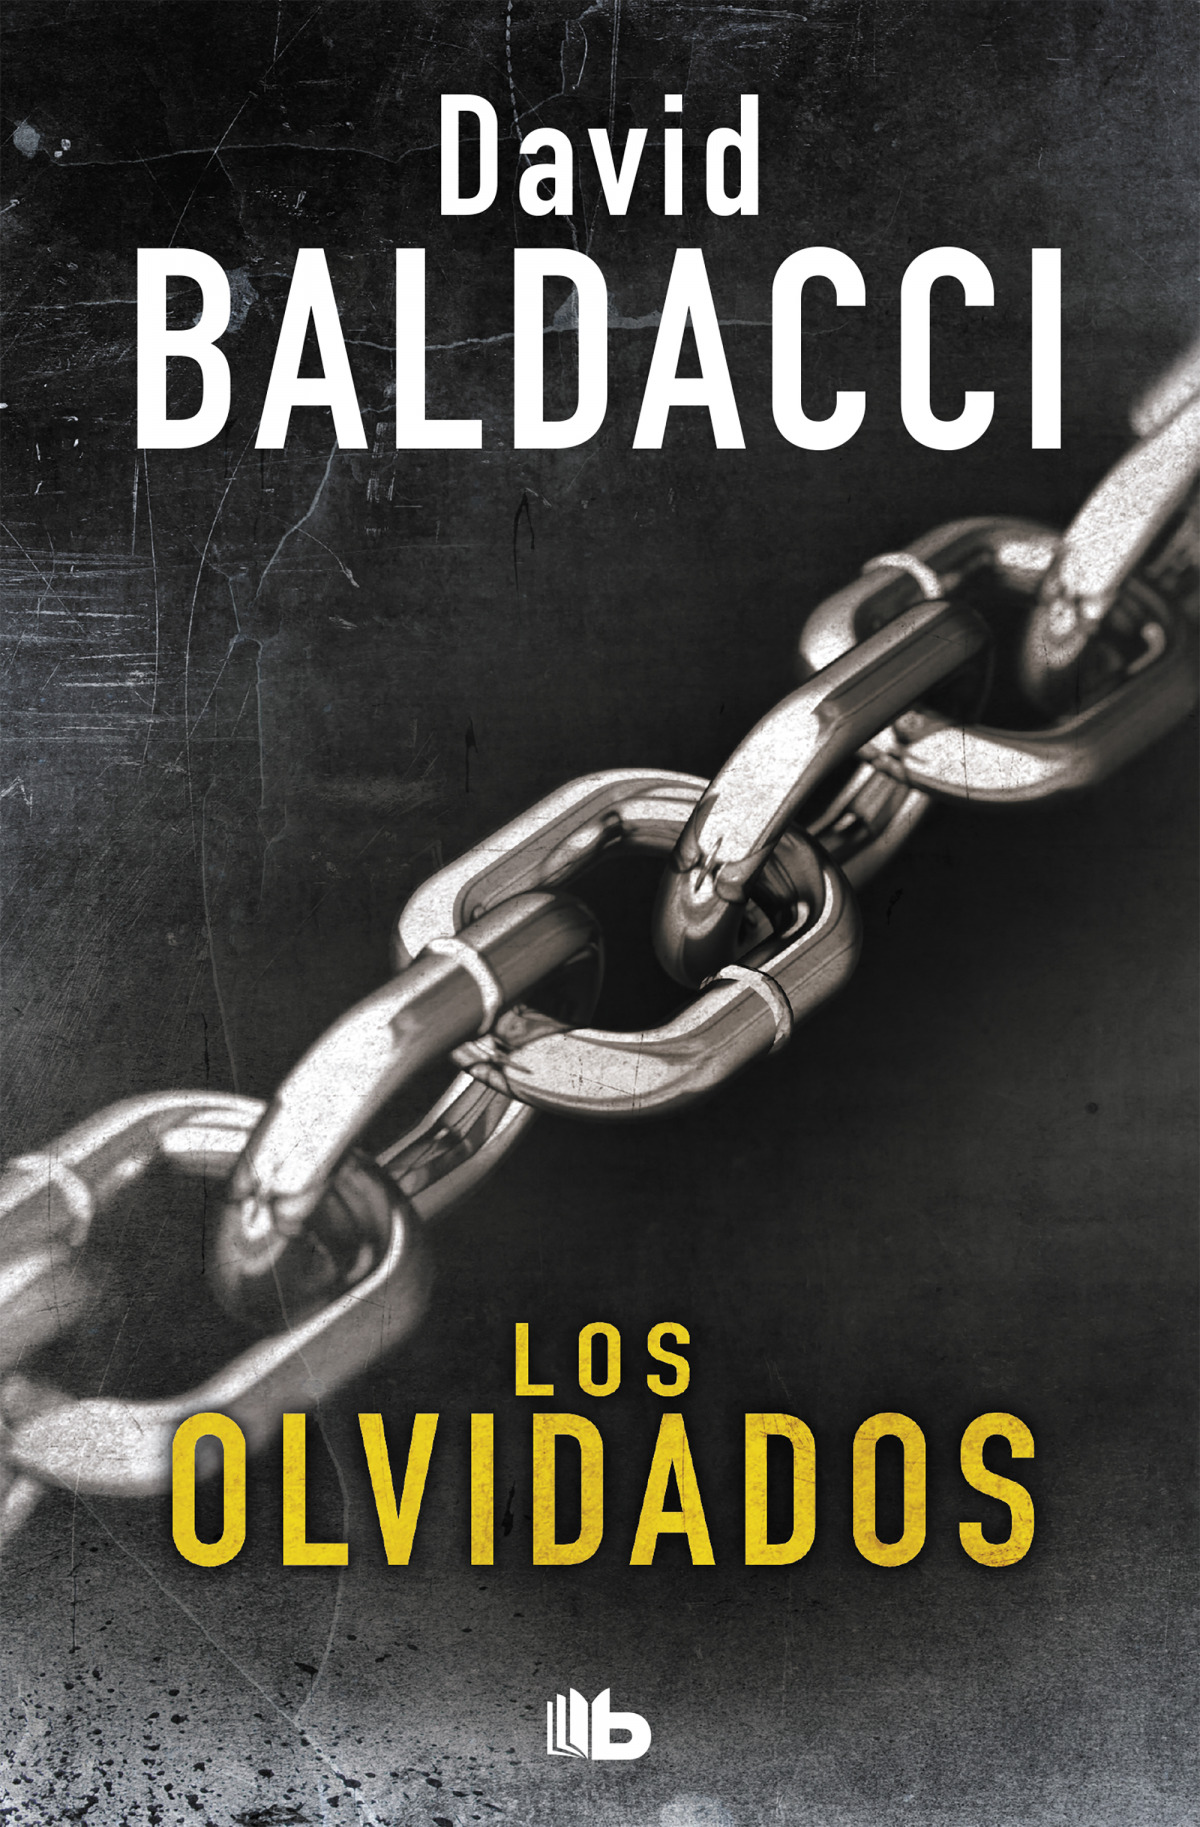 Los olvidados - Baldacci, David